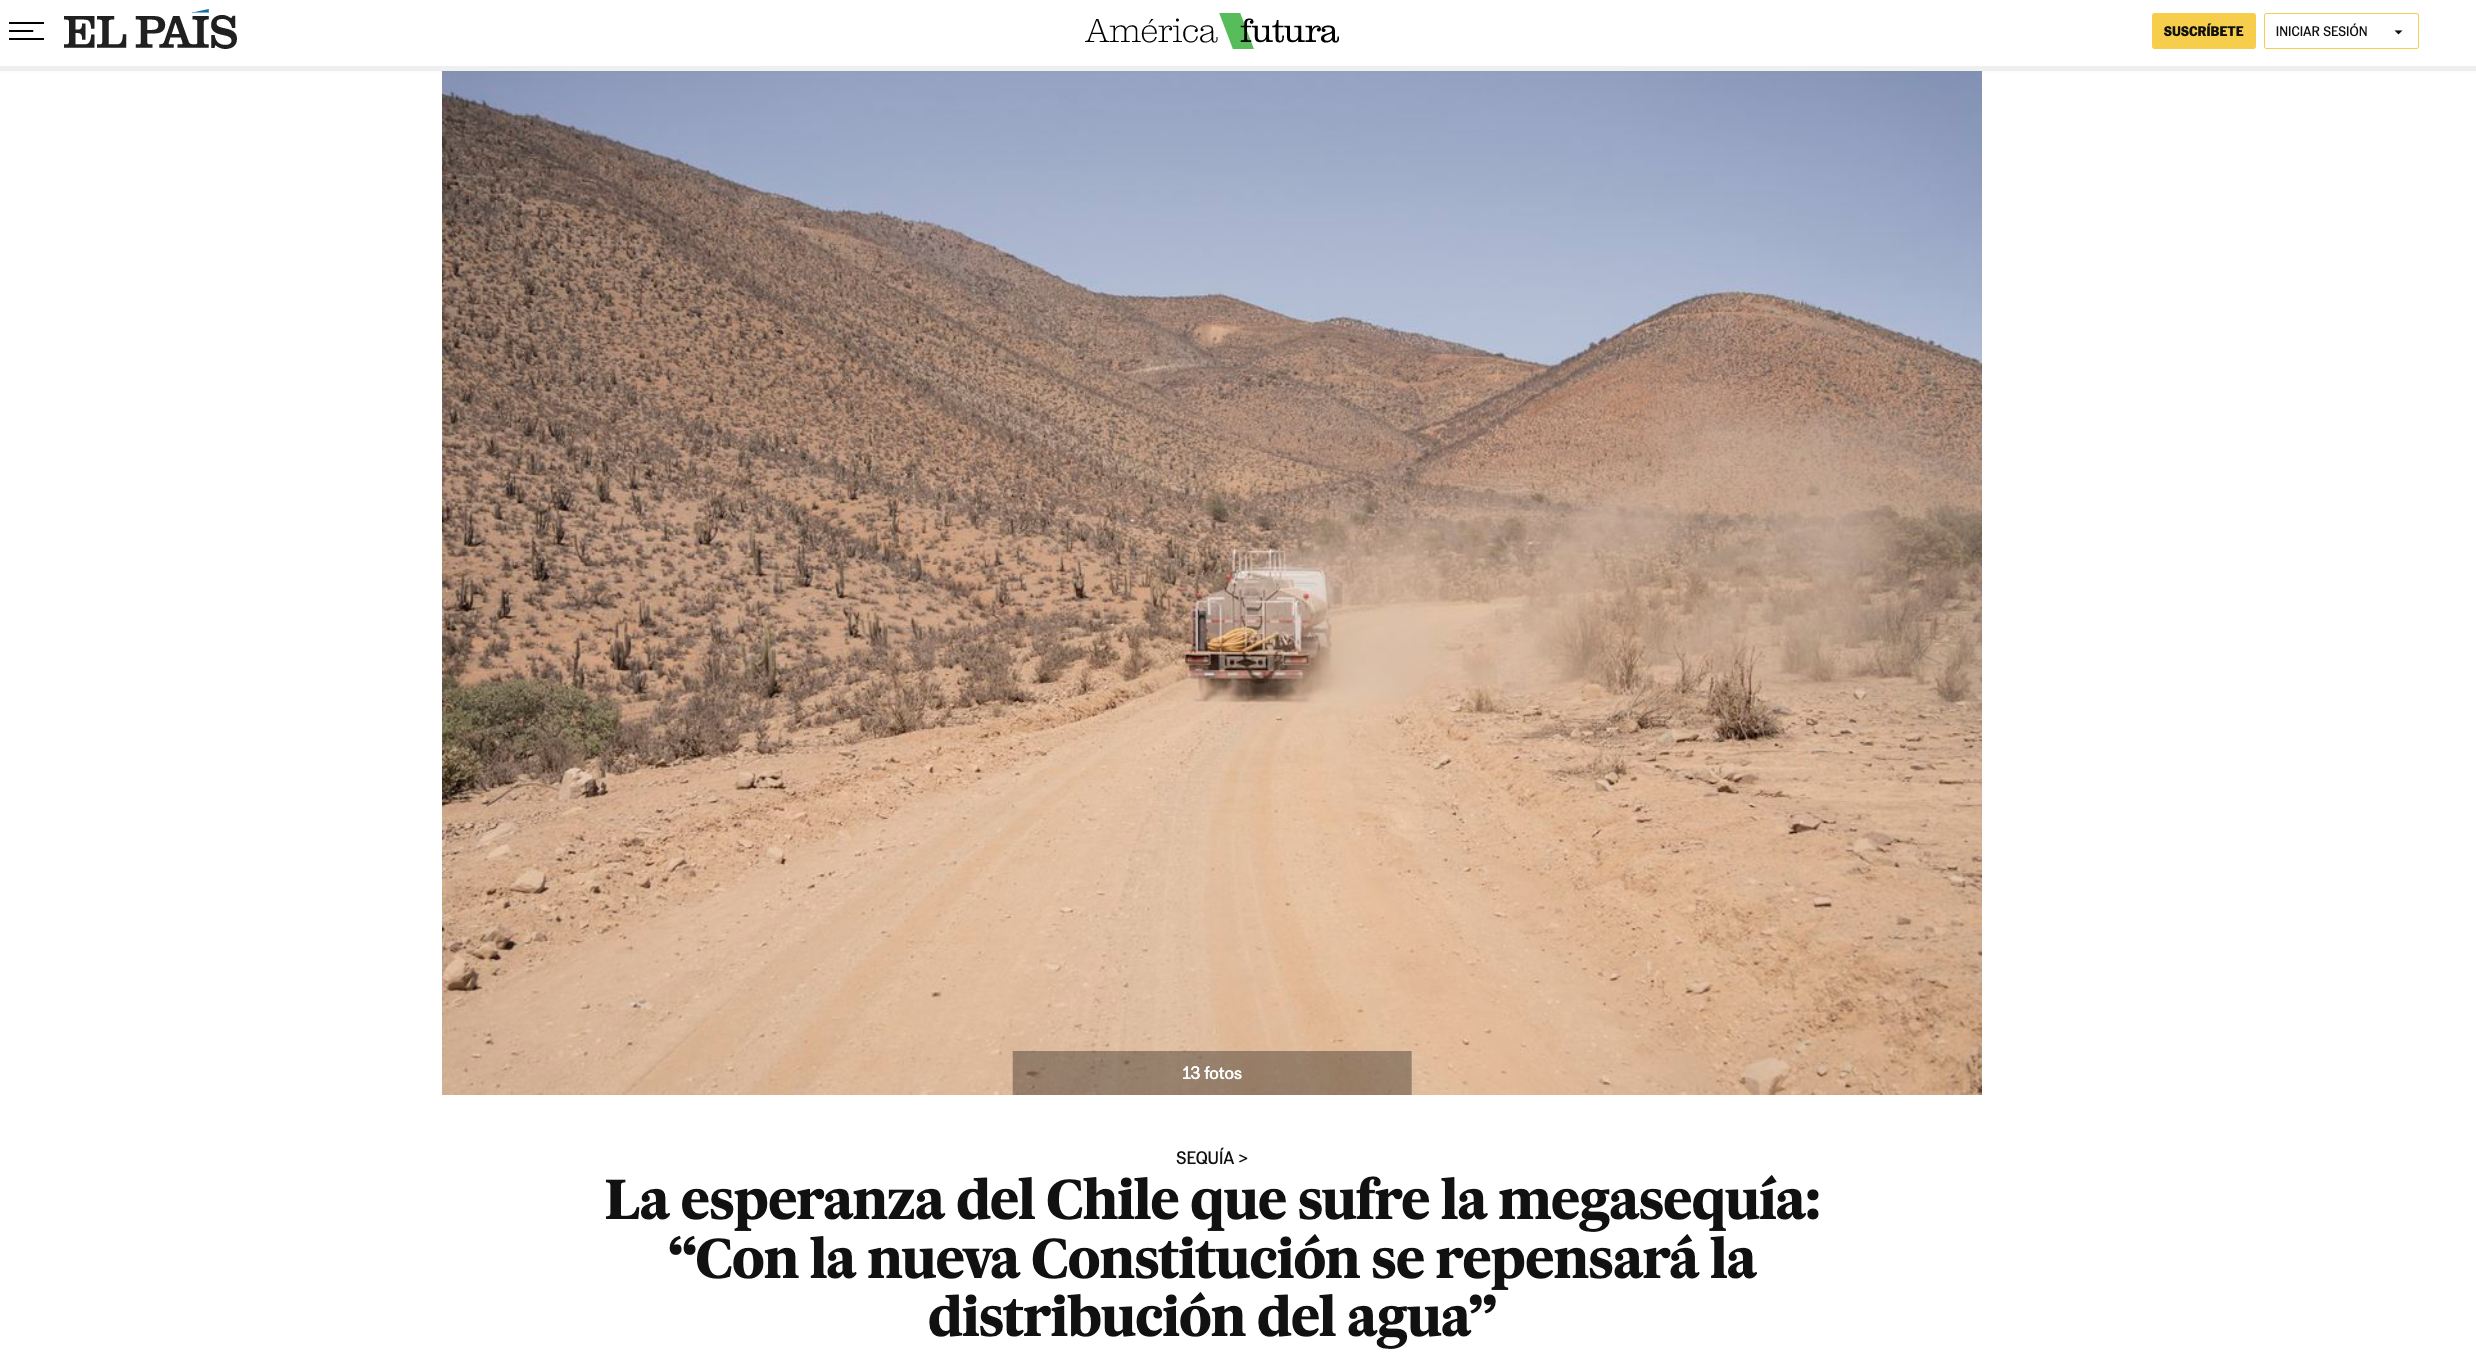 EL PAIS: La esperanza del Chile que sufre la megasequía: “Con la nueva Constitución se repensará la distribución del agua”